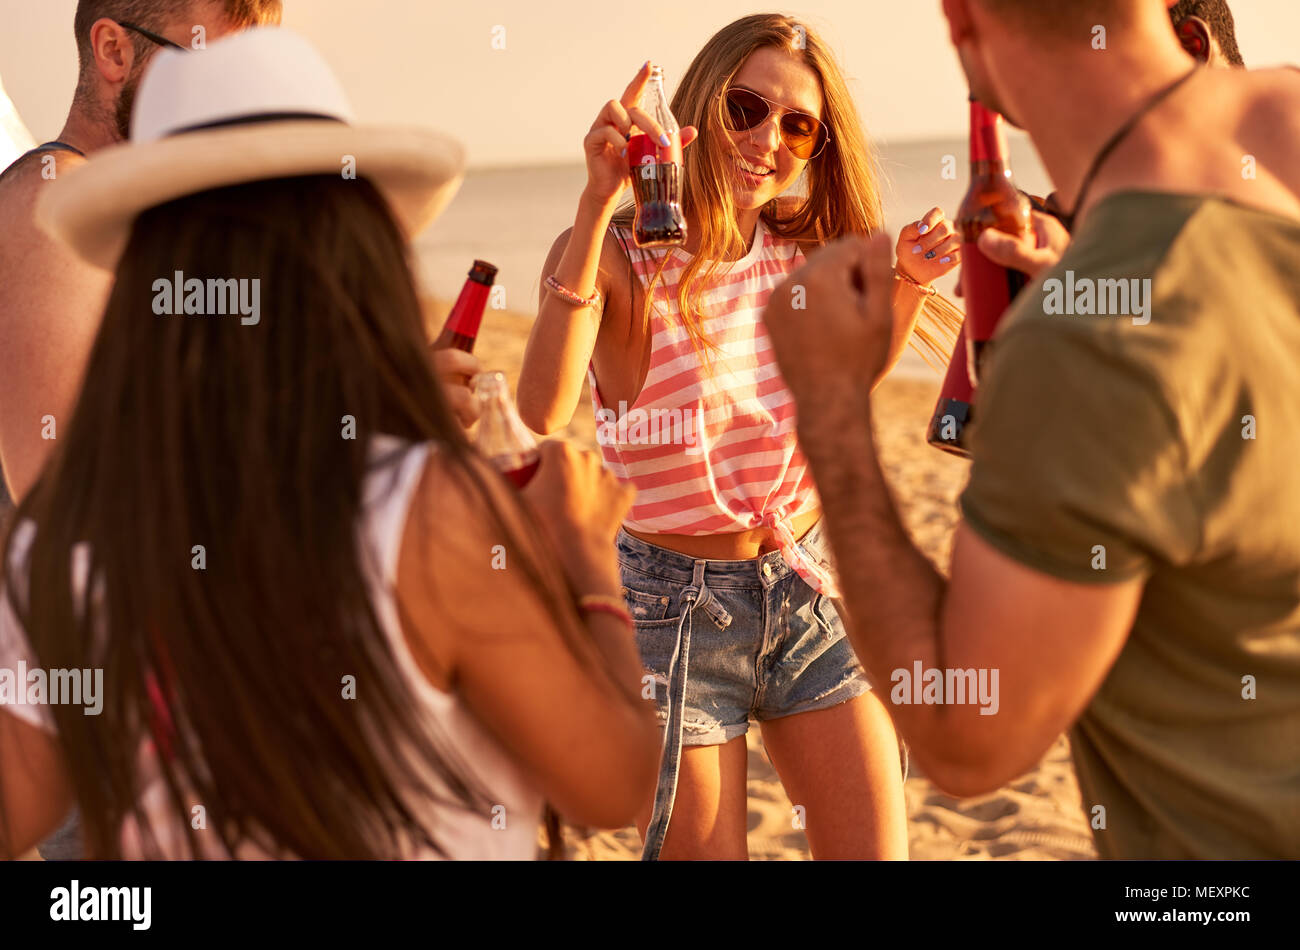 Les jeunes extatique de boire de l'alcool et danser sur la plage Banque D'Images